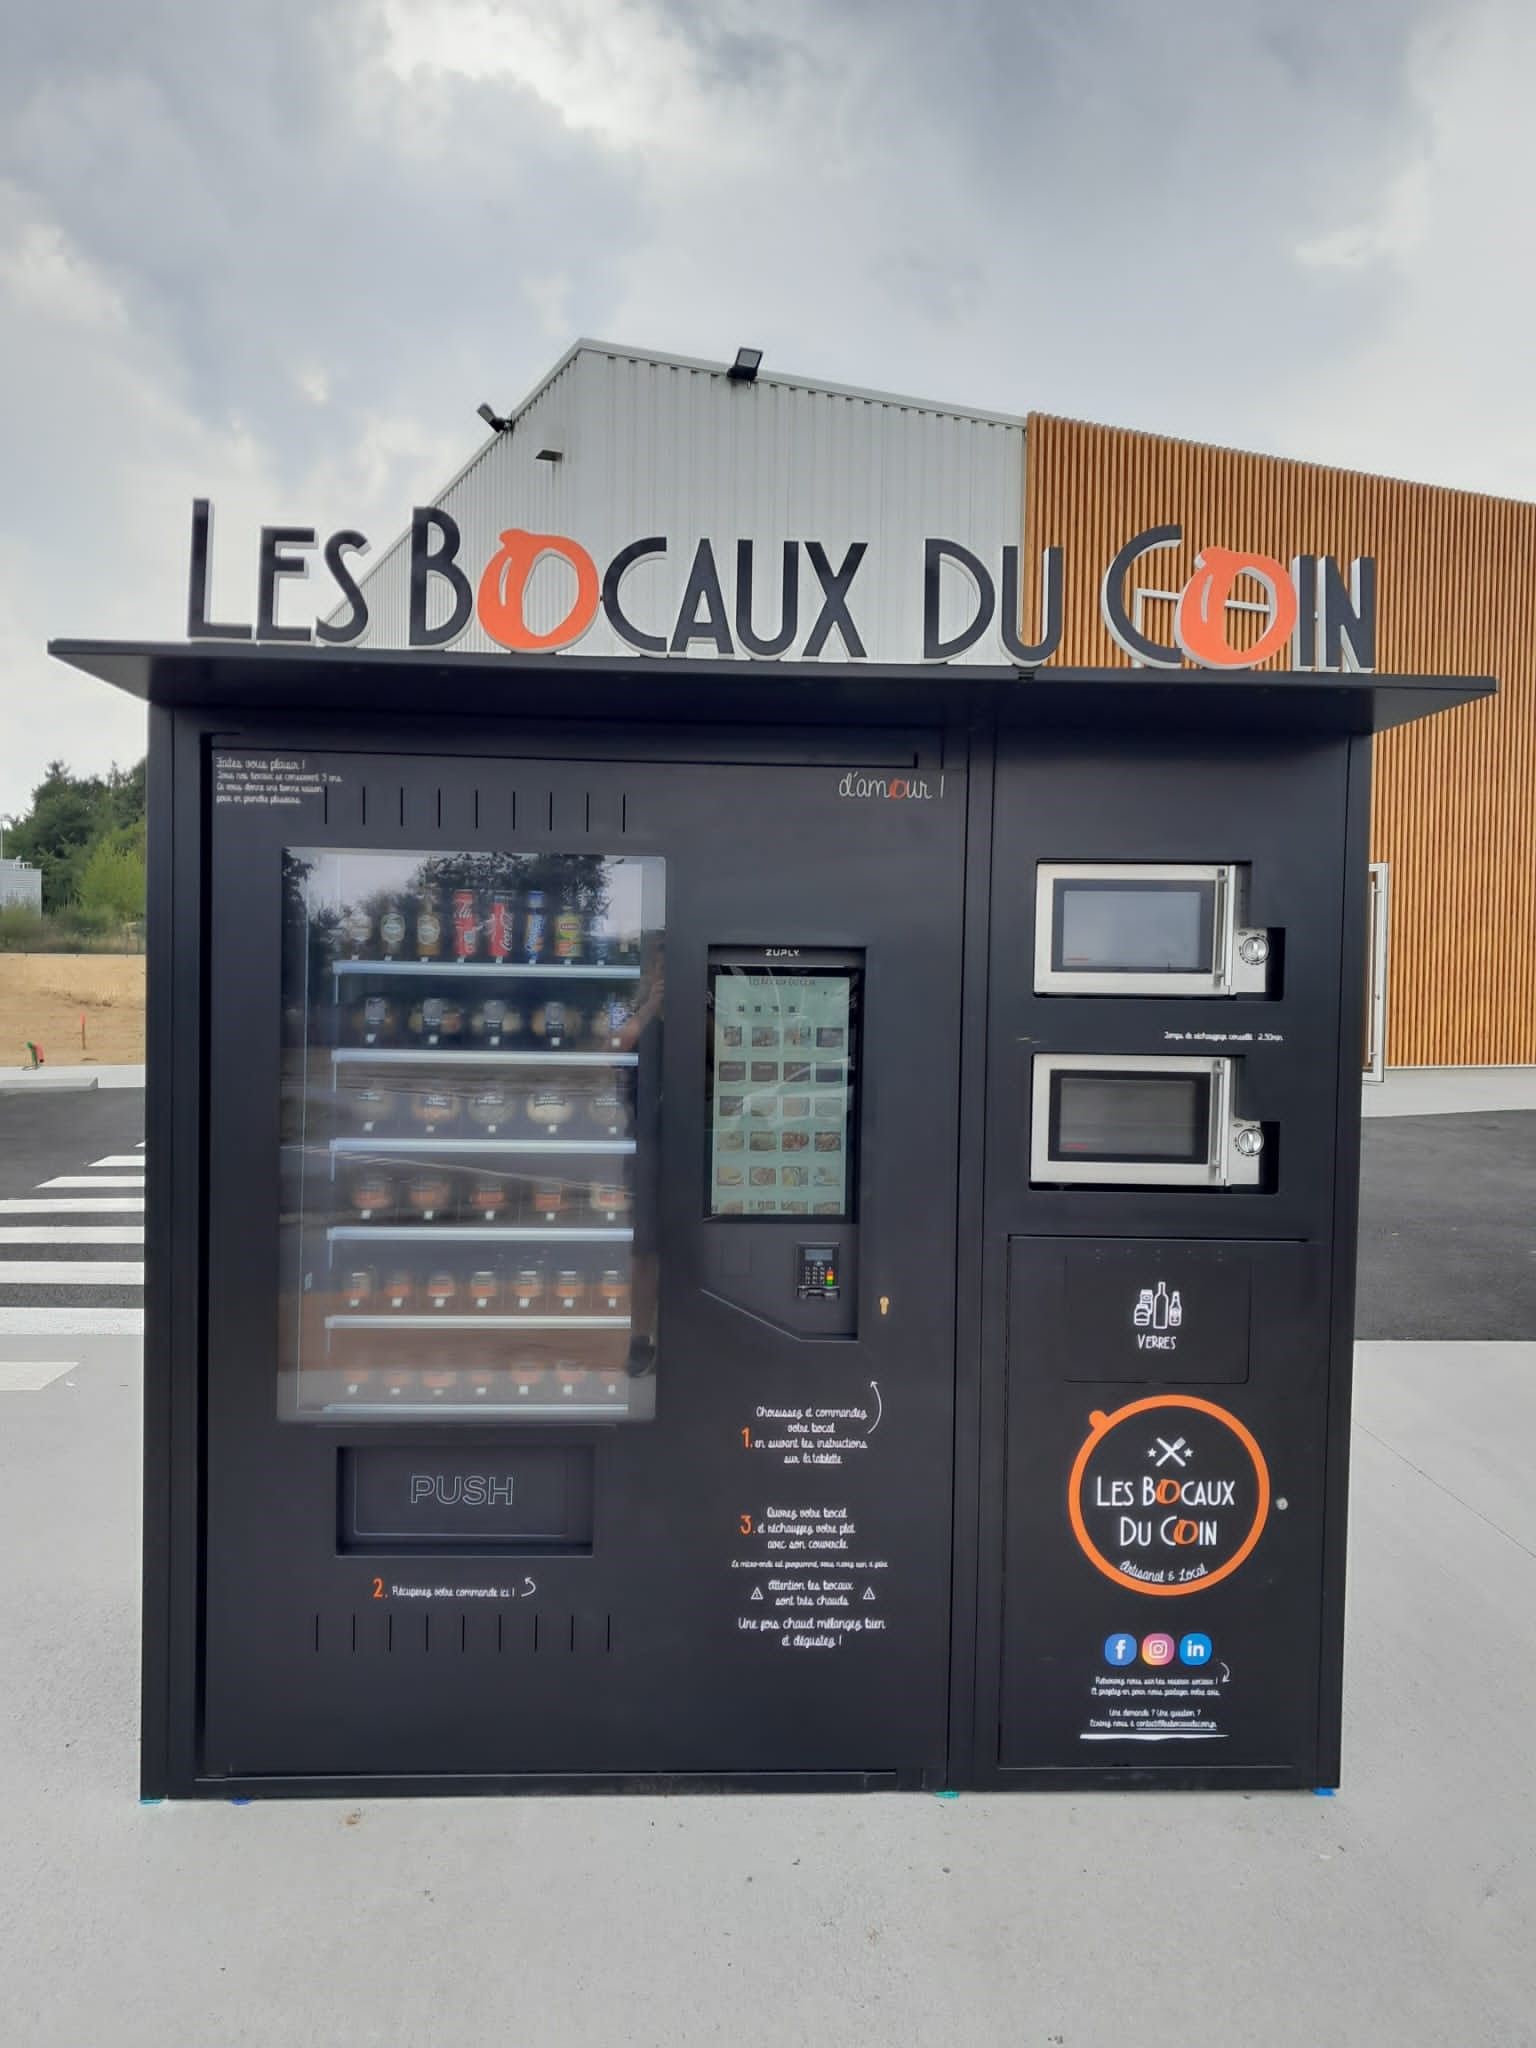 Торговый автомат Les Bocaux Du Coin с готовыми блюда в банках из ресторана (АЗС, автомойка, парковка) Франция